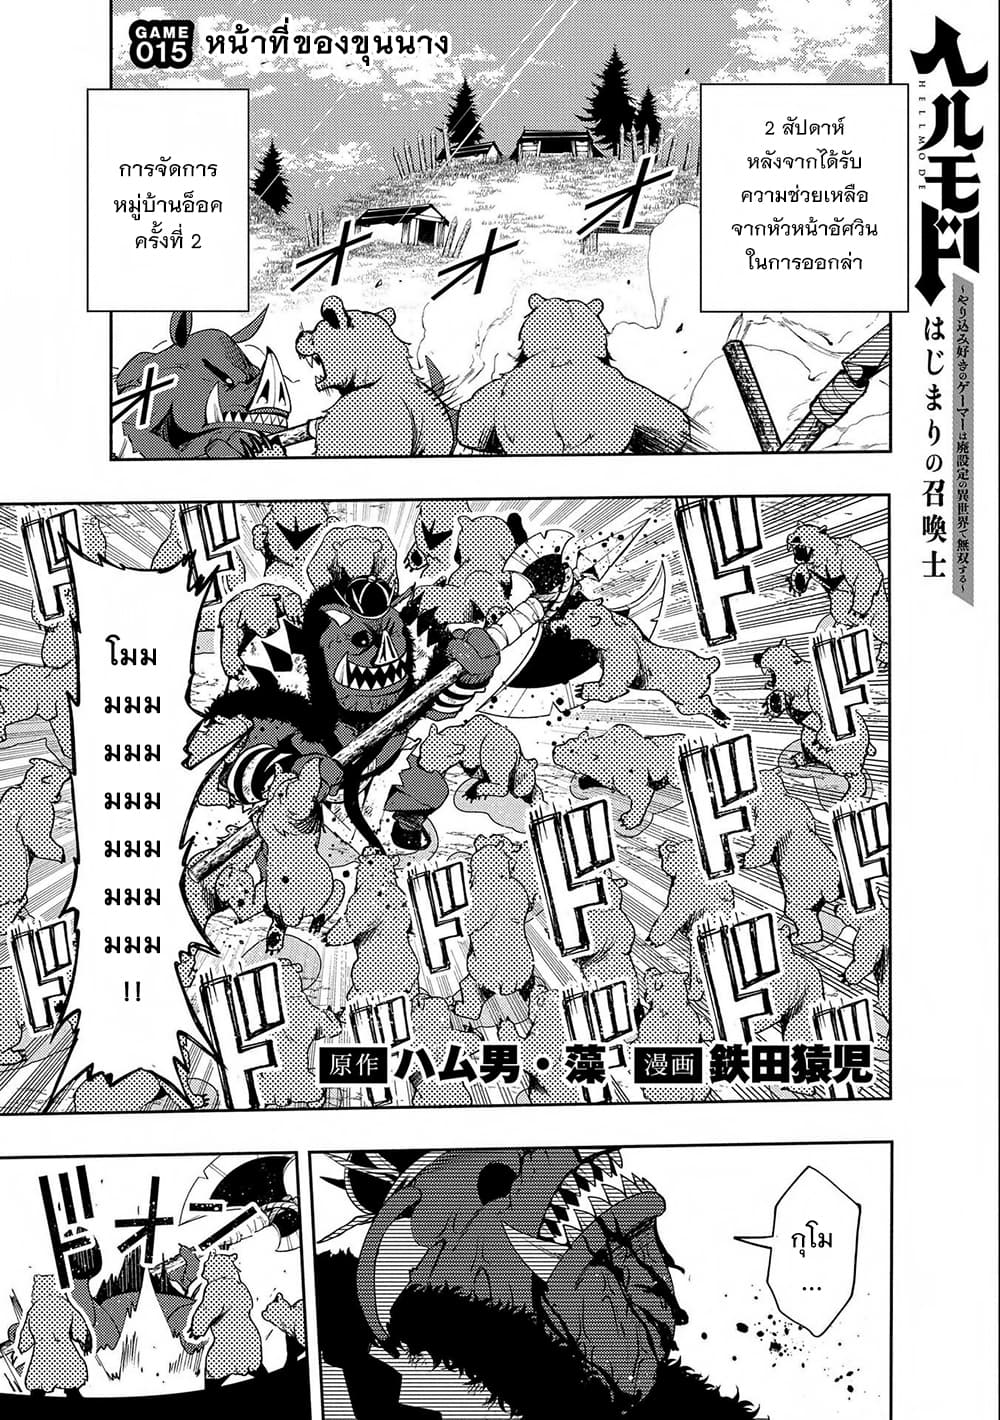 Hell Mode Yarikomi Suki no Gamer wa Hai Settei no Isekai de Musou Suru 15 (1)